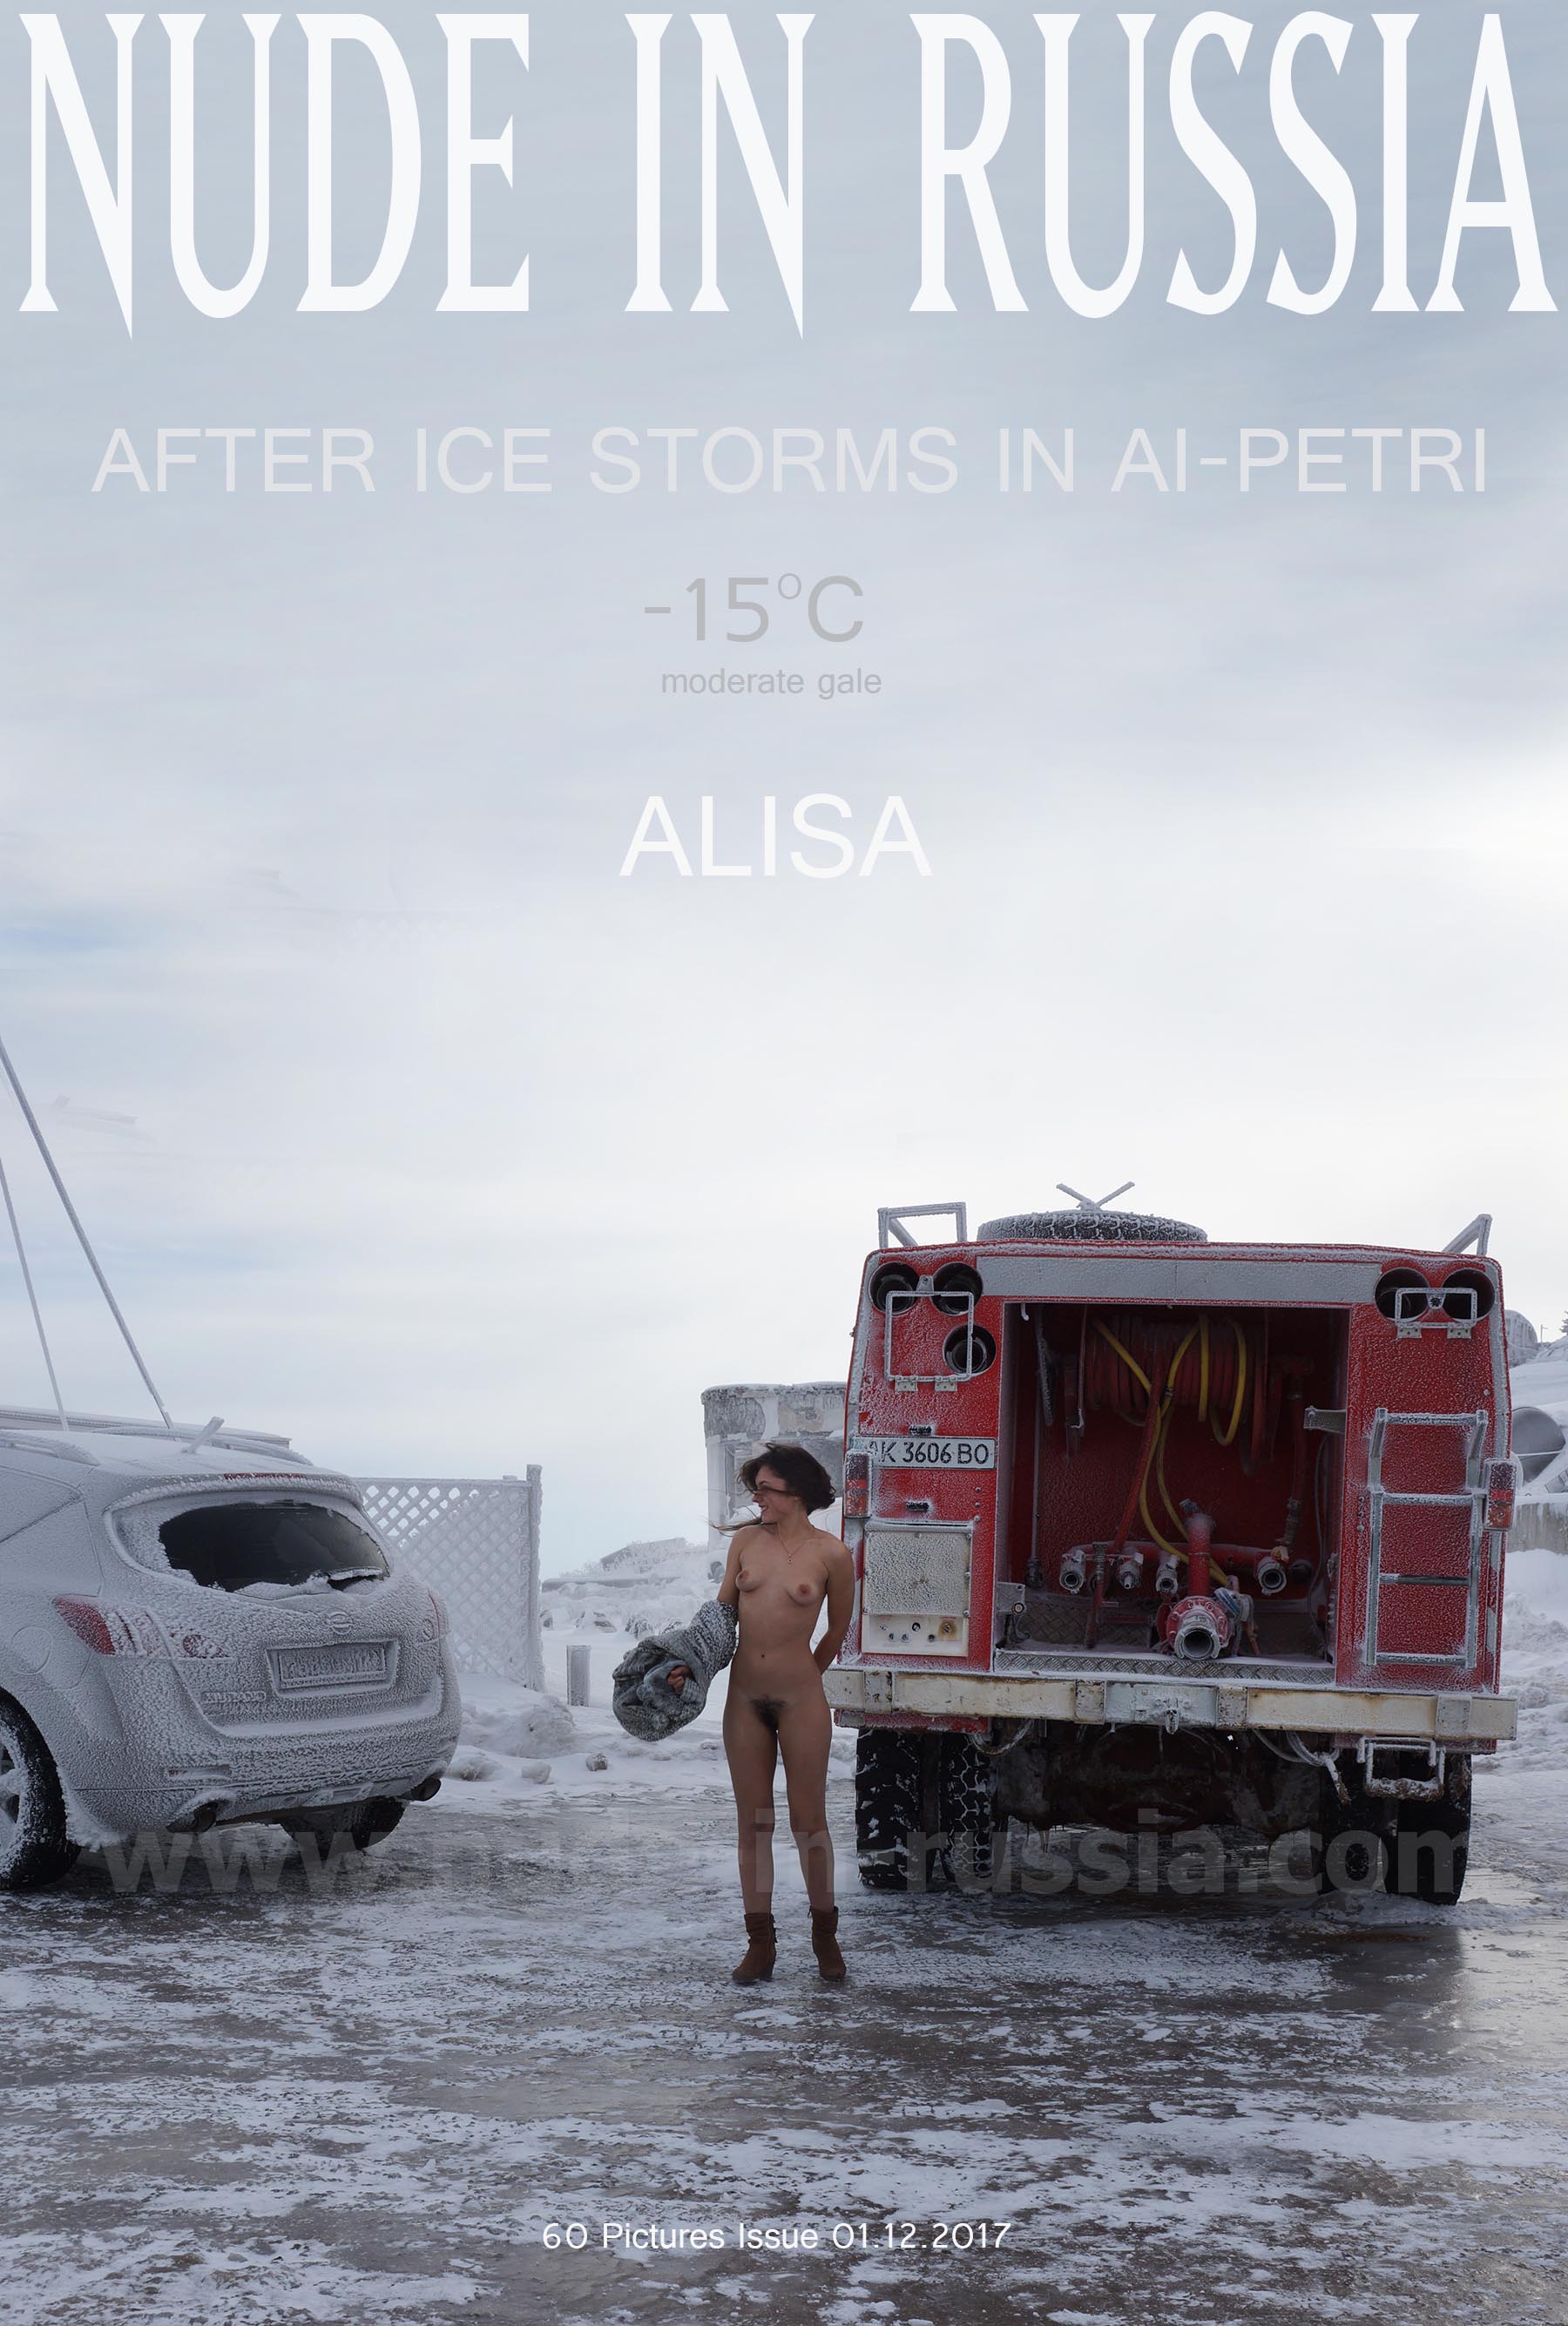 NIR-2017-12-01 - Alisa 2 - After ice storm in ai pe (1).jpg